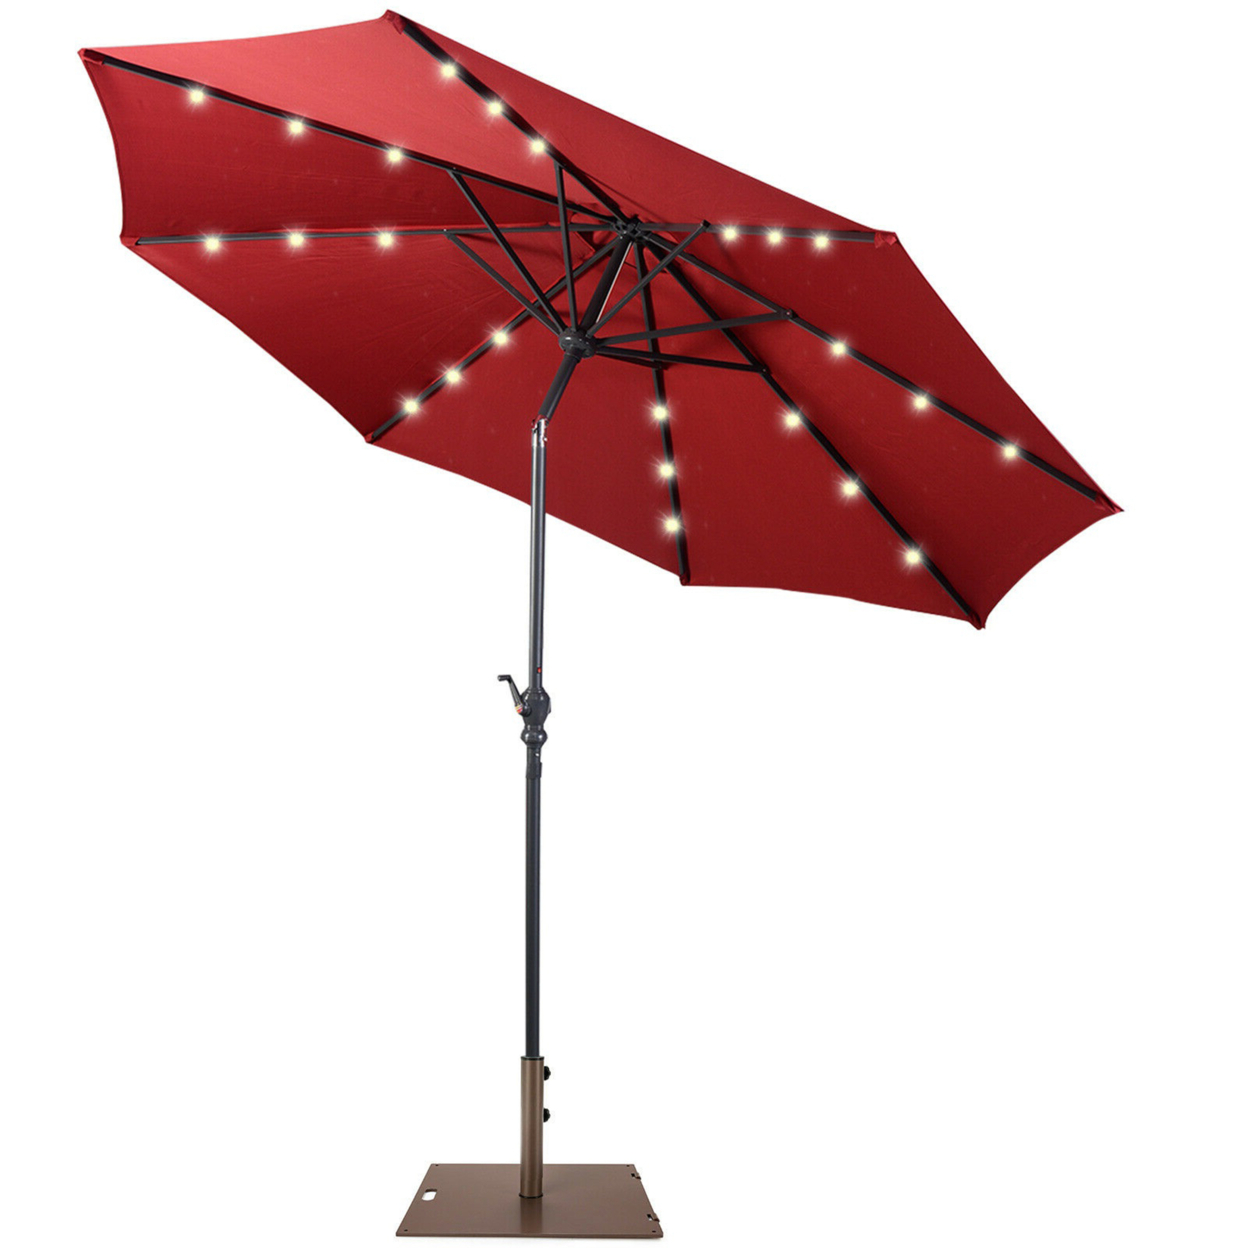 10 Ft Patio Table Market Umbrella W/ 24 Solar LED Lights & Heavy-duty Base - Wine